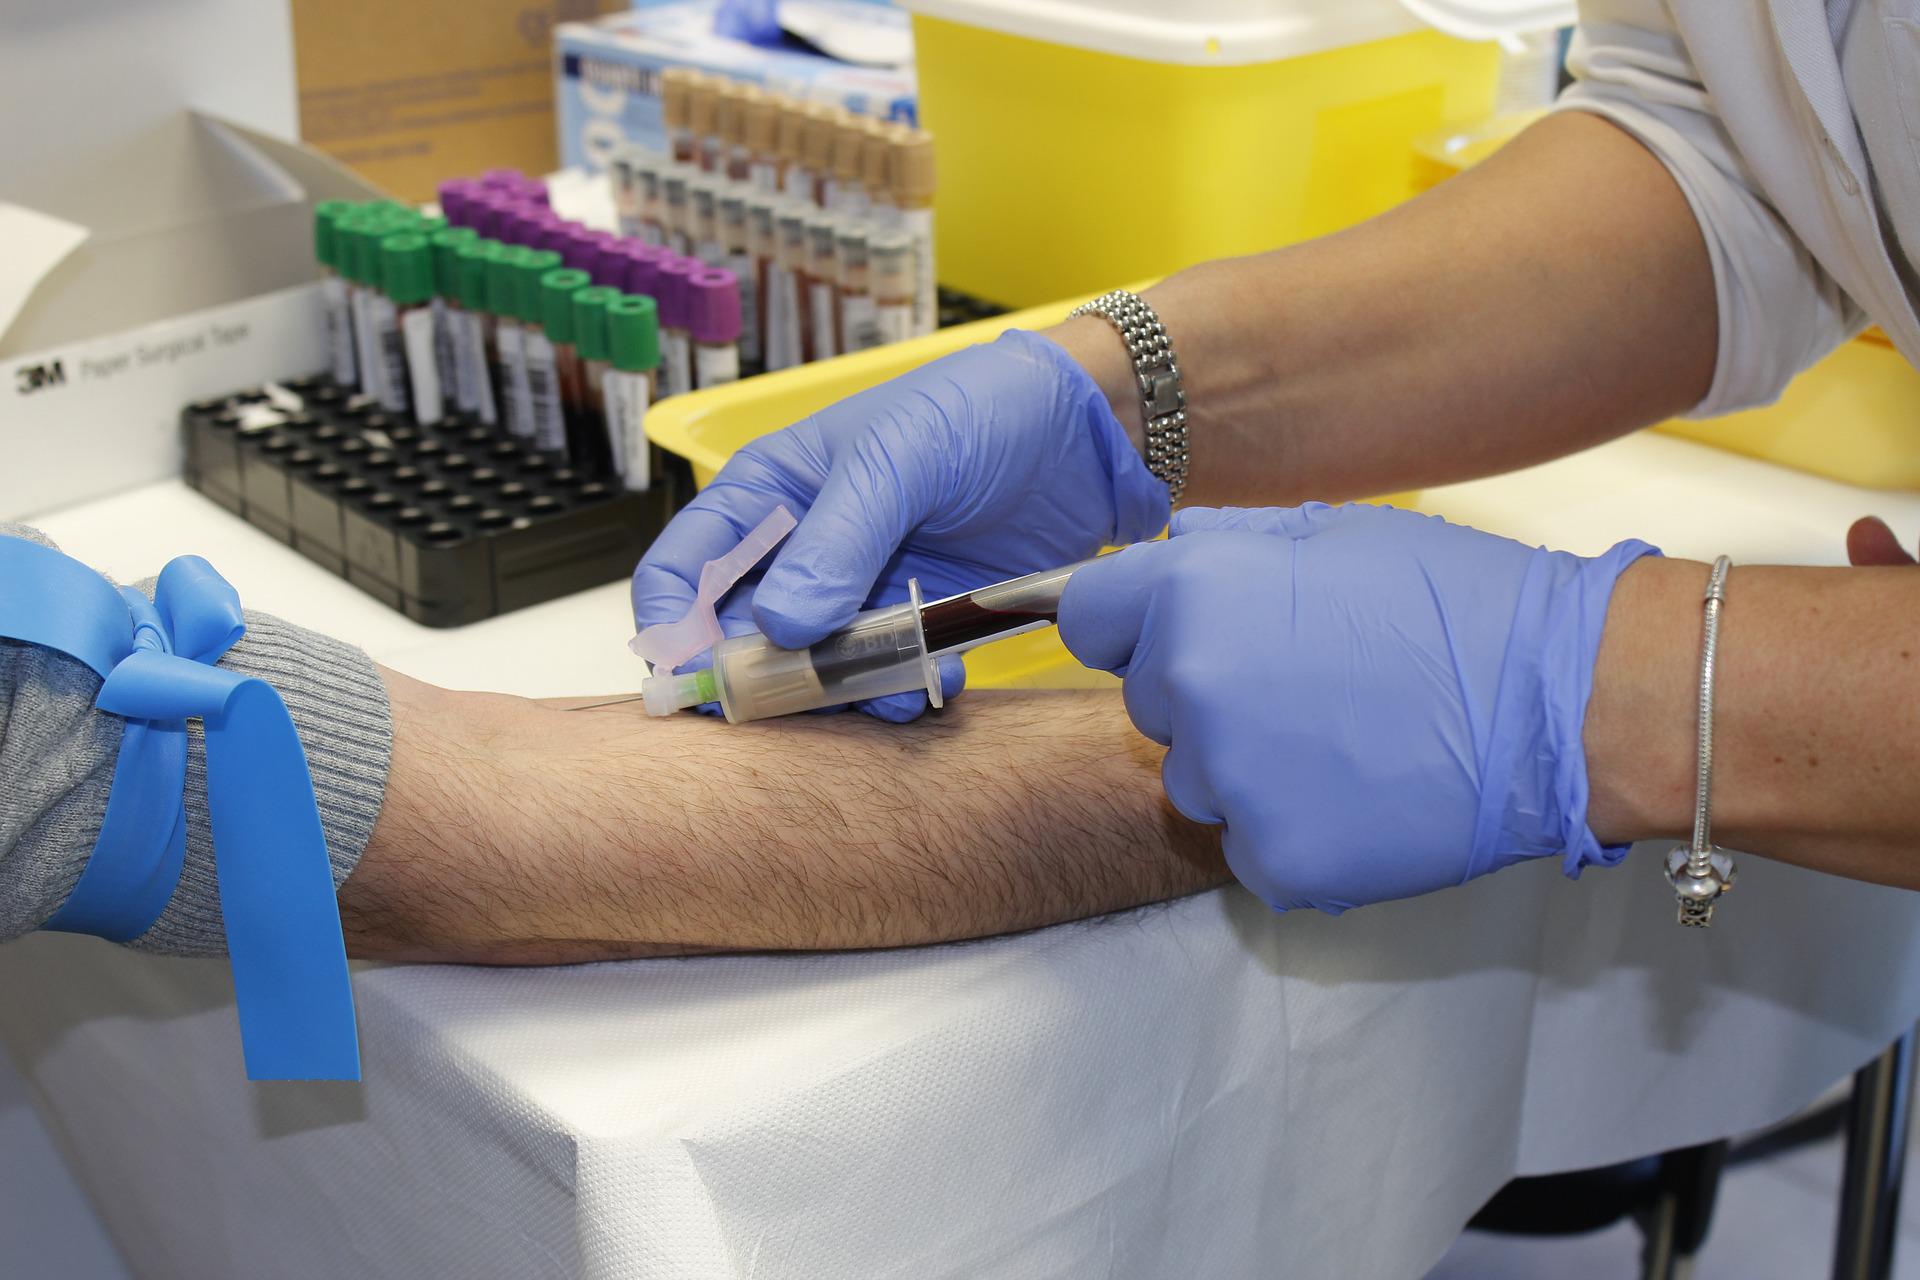 Epatite C: in provincia via allo screening gratuito per prevenire e controllare il virus